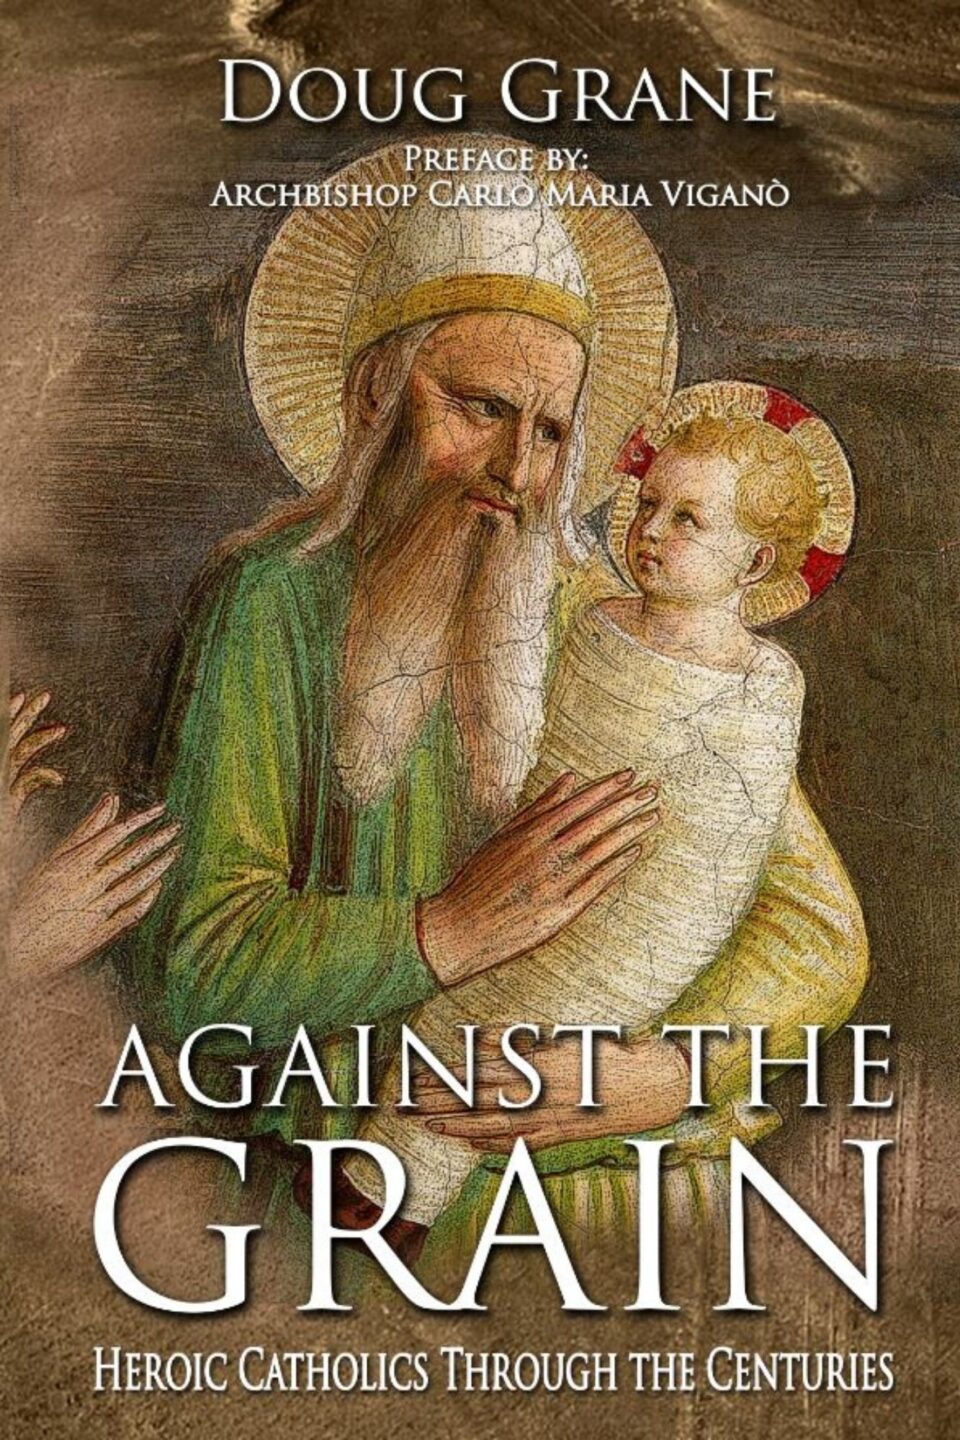 “Against the Grain” ističe vrline svetaca kroz stoljeća